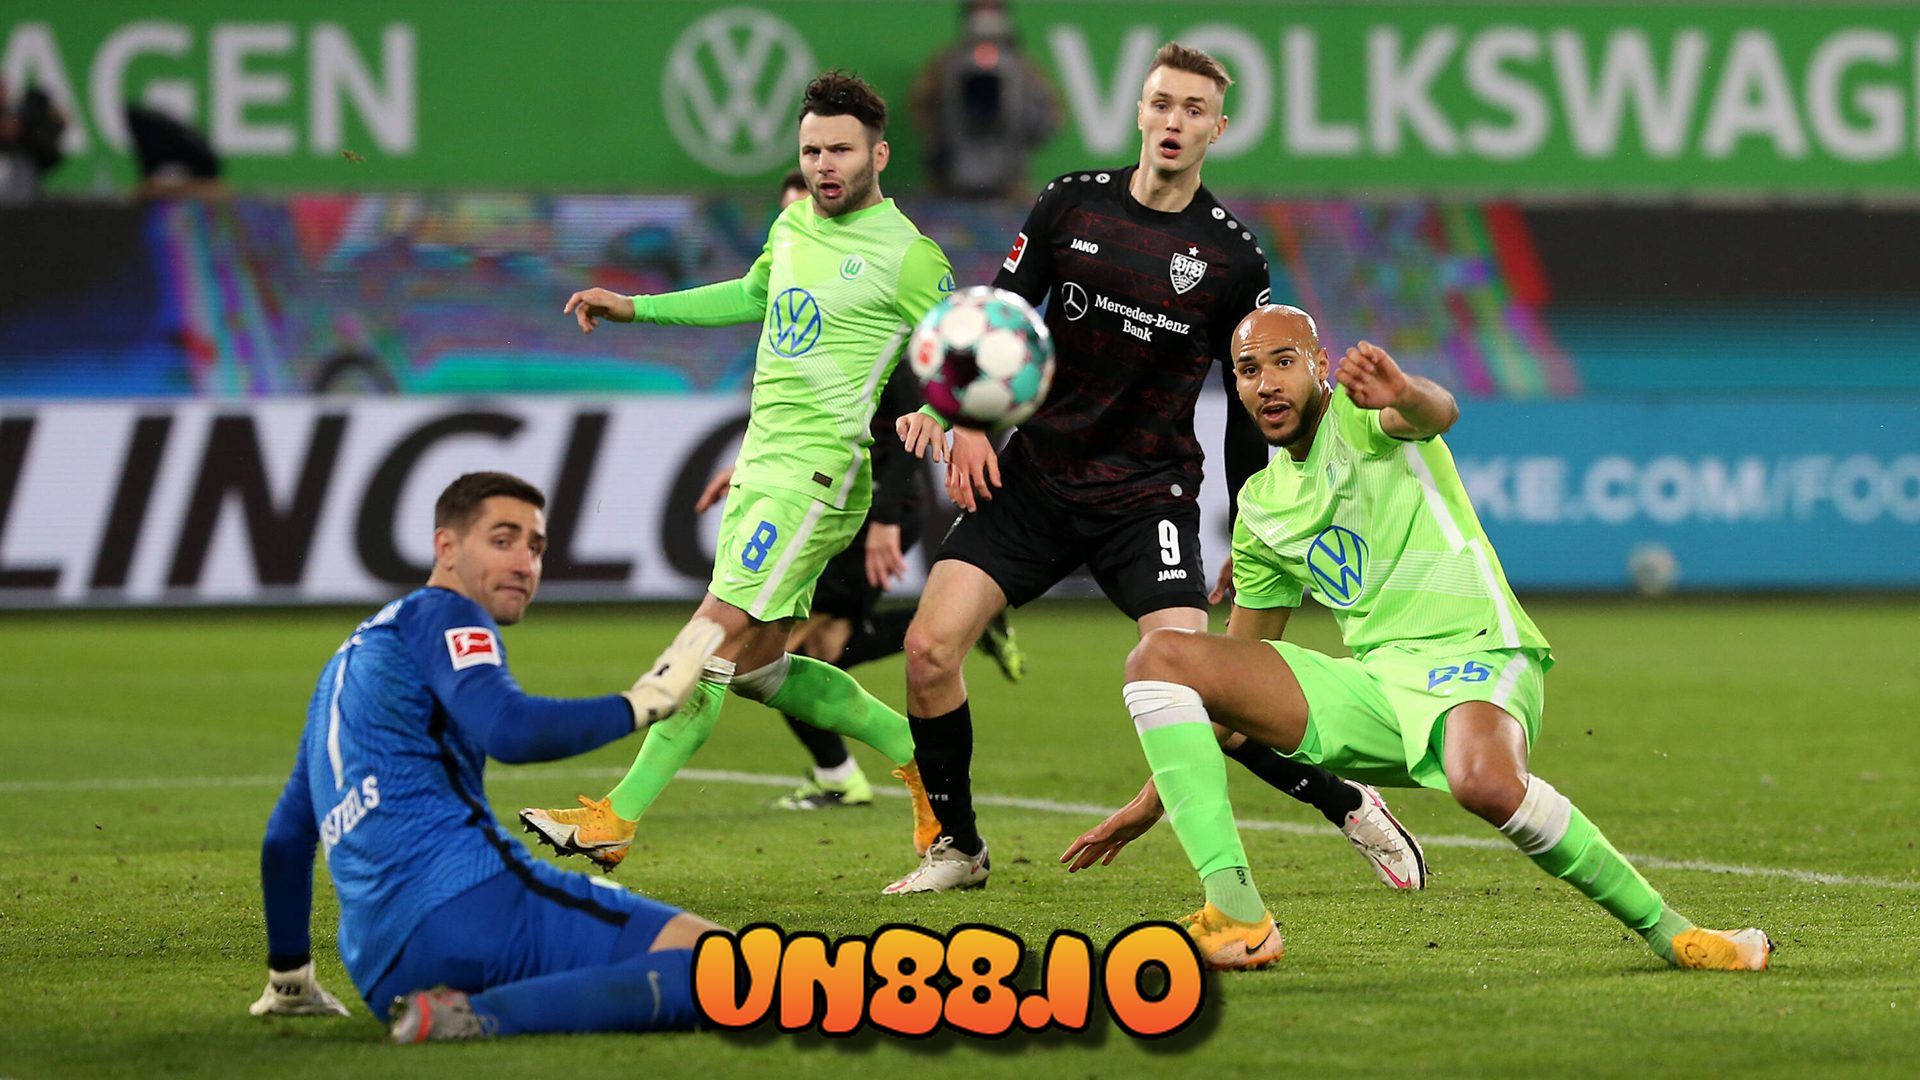 Soi kèo bóng đá Stuttgart vs Wolfsburg 22/04/2021 vô địch quốc gia Đức